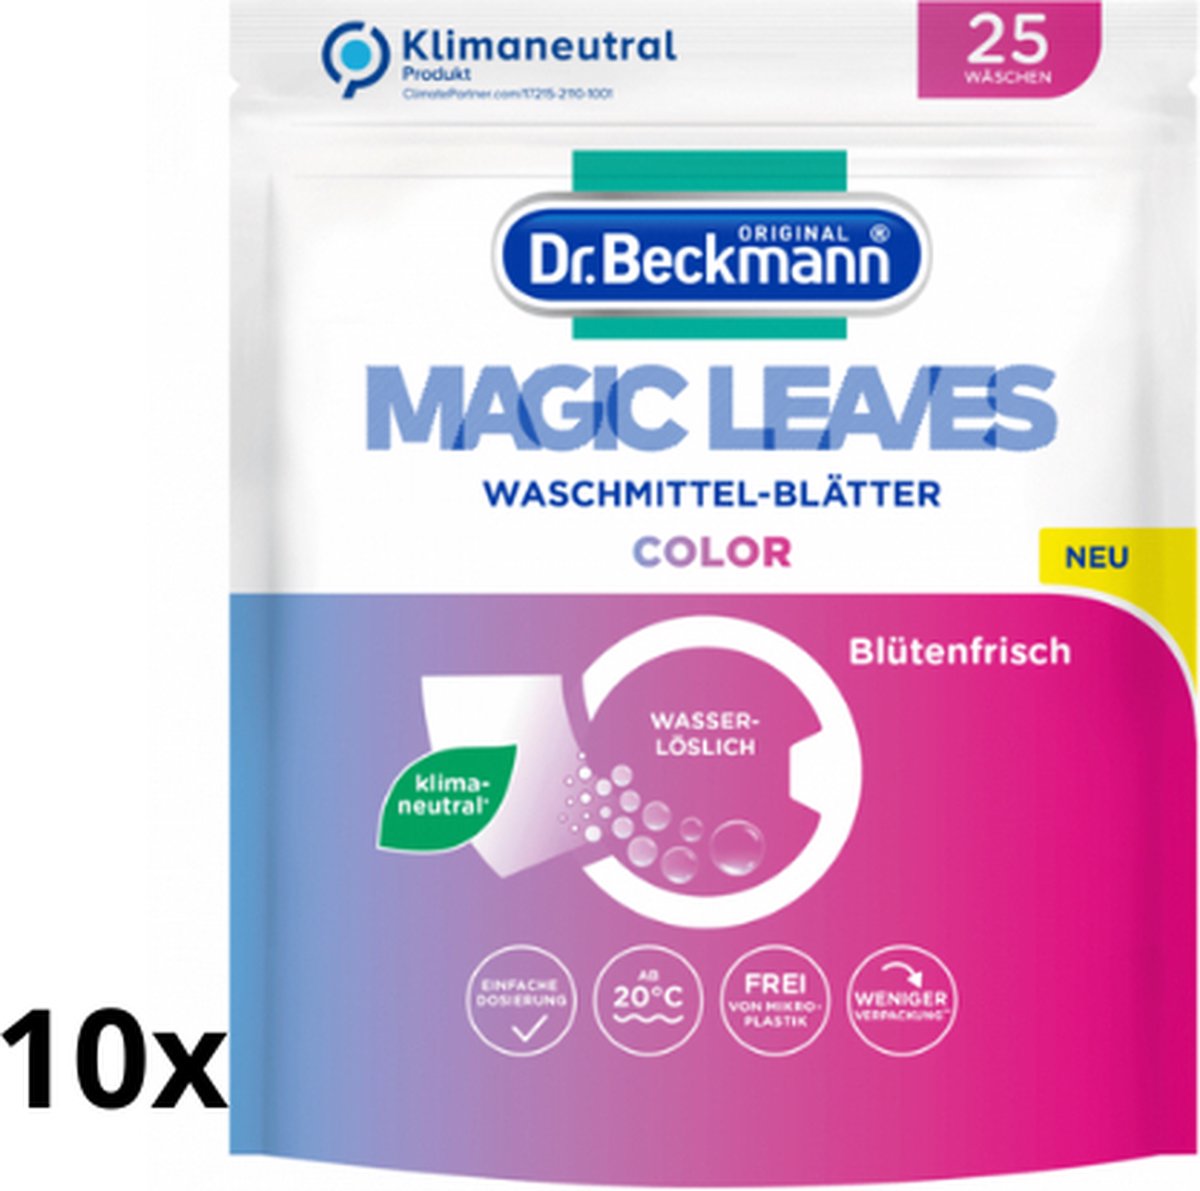 10x Dr. Beckmann Magic Leaves Color - 10x25 wasvellen - 250 wasbeurten - Wasmiddel bladen - Milieuvriendelijk